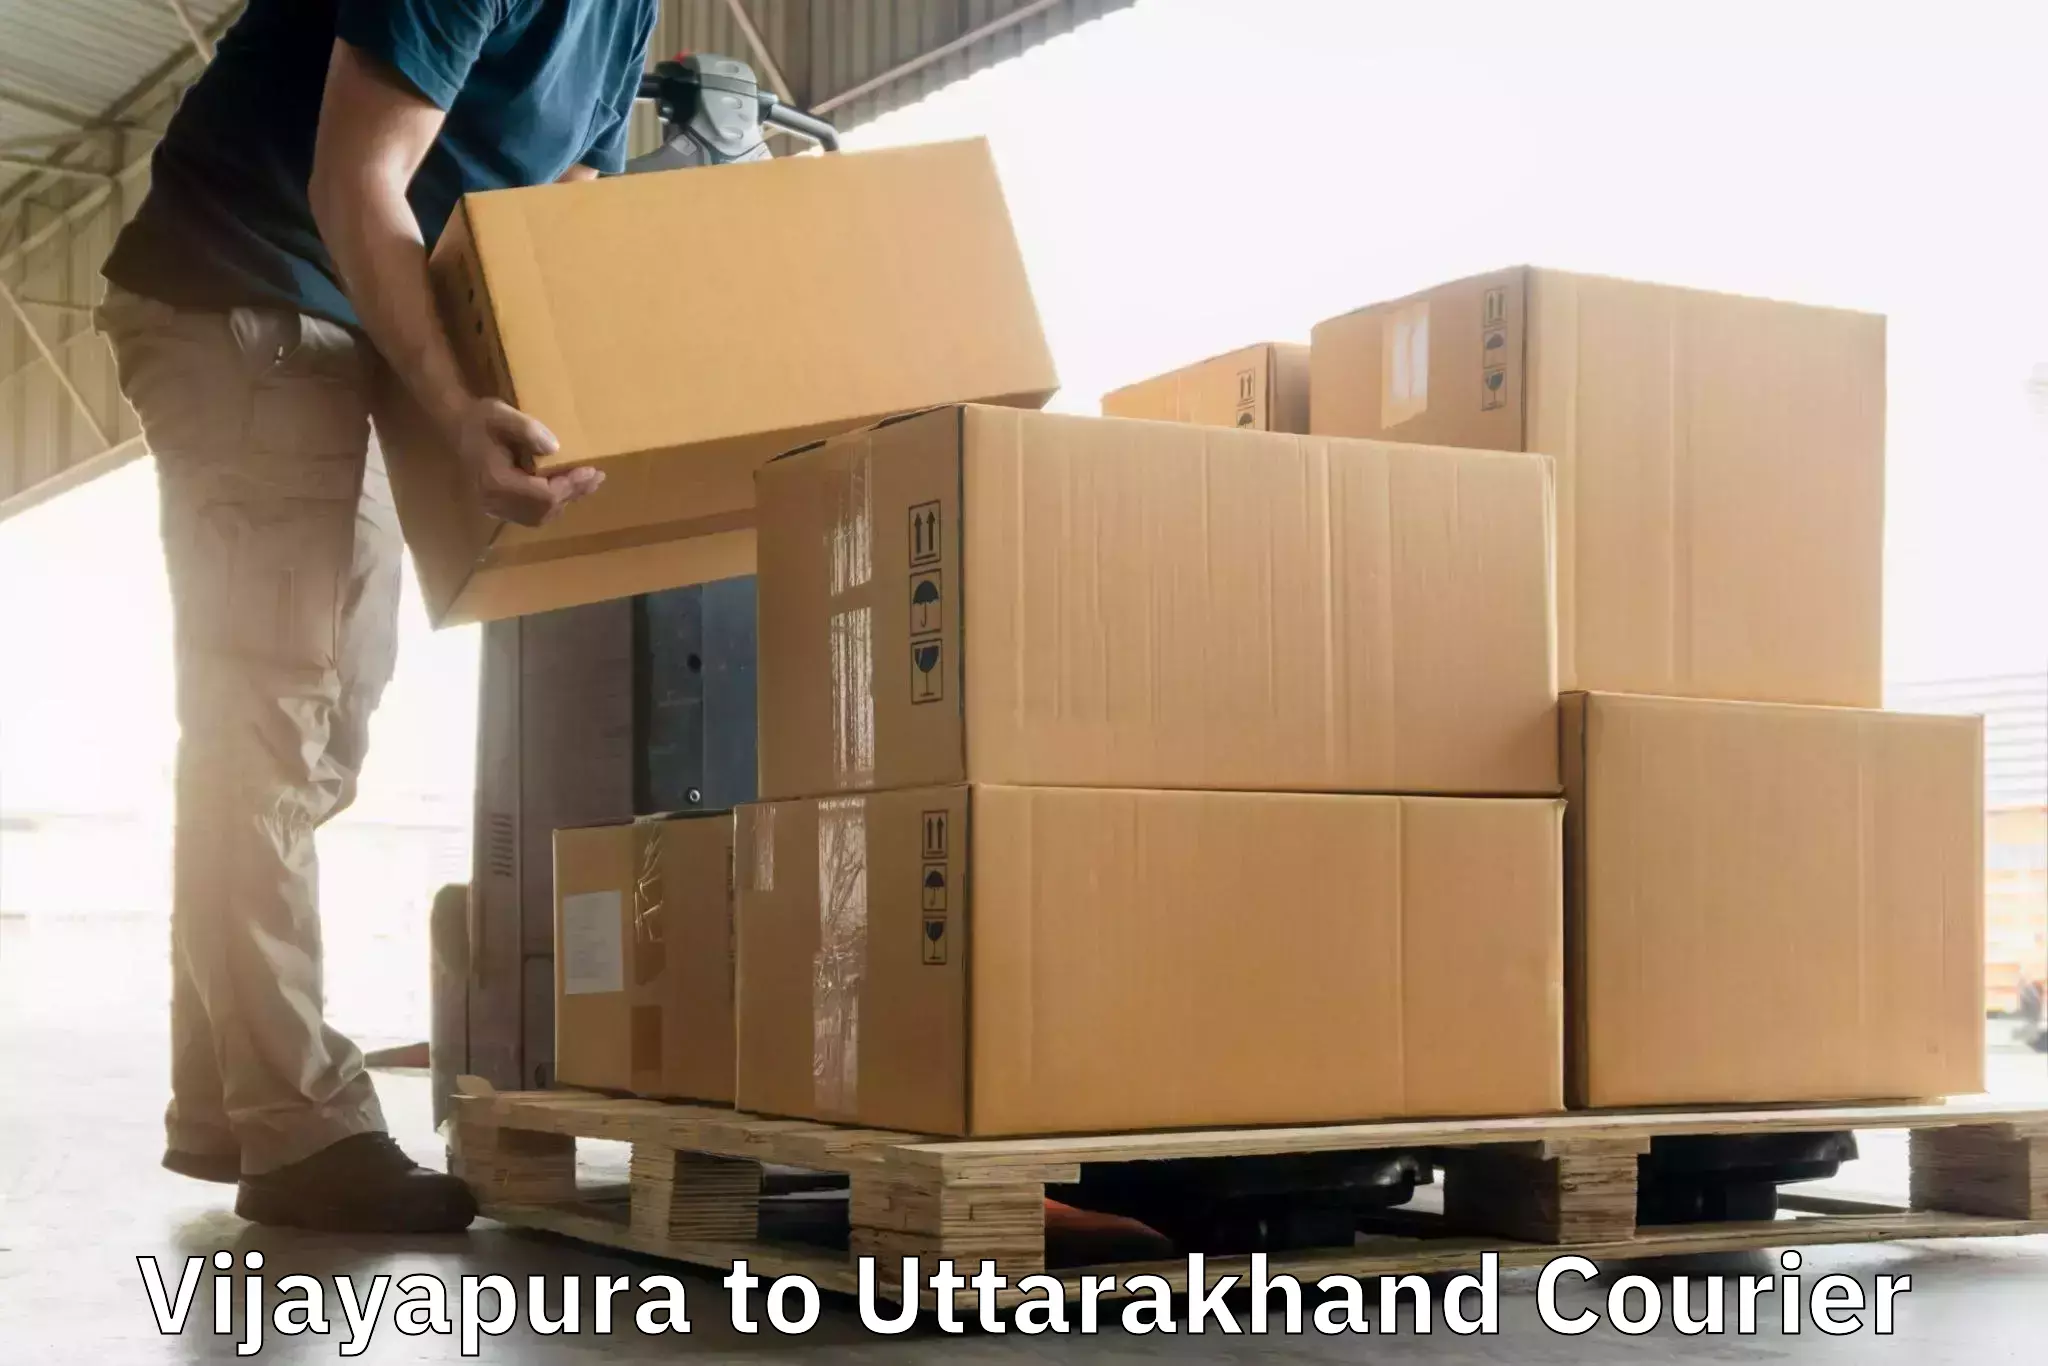 Urgent courier needs Vijayapura to Doiwala